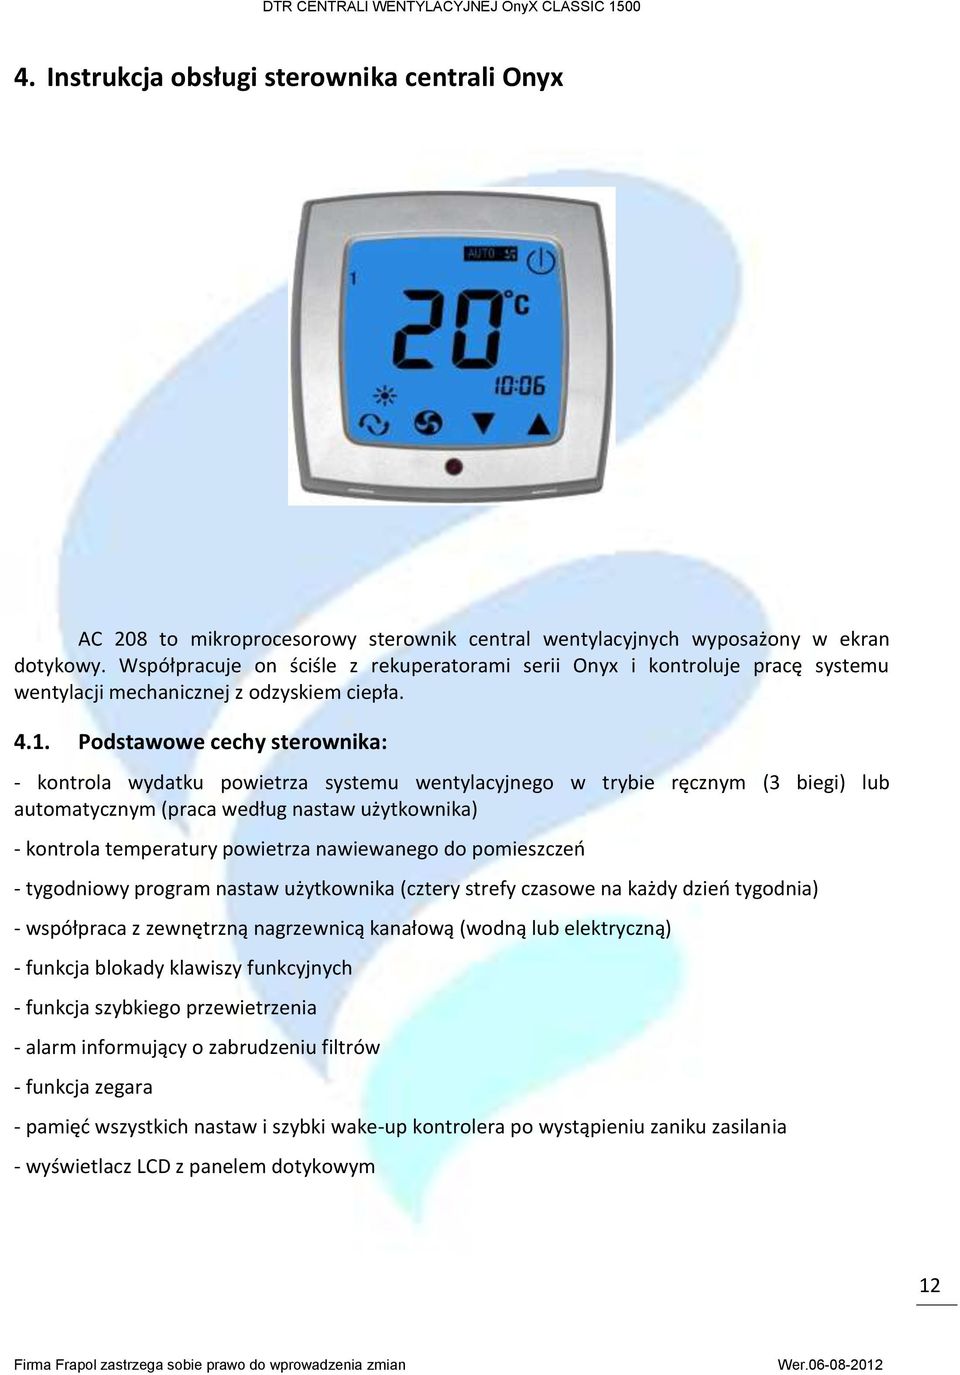 Podstawowe cechy sterownika: - kontrola wydatku powietrza systemu wentylacyjnego w trybie ręcznym (3 biegi) lub automatycznym (praca według nastaw użytkownika) - kontrola temperatury powietrza